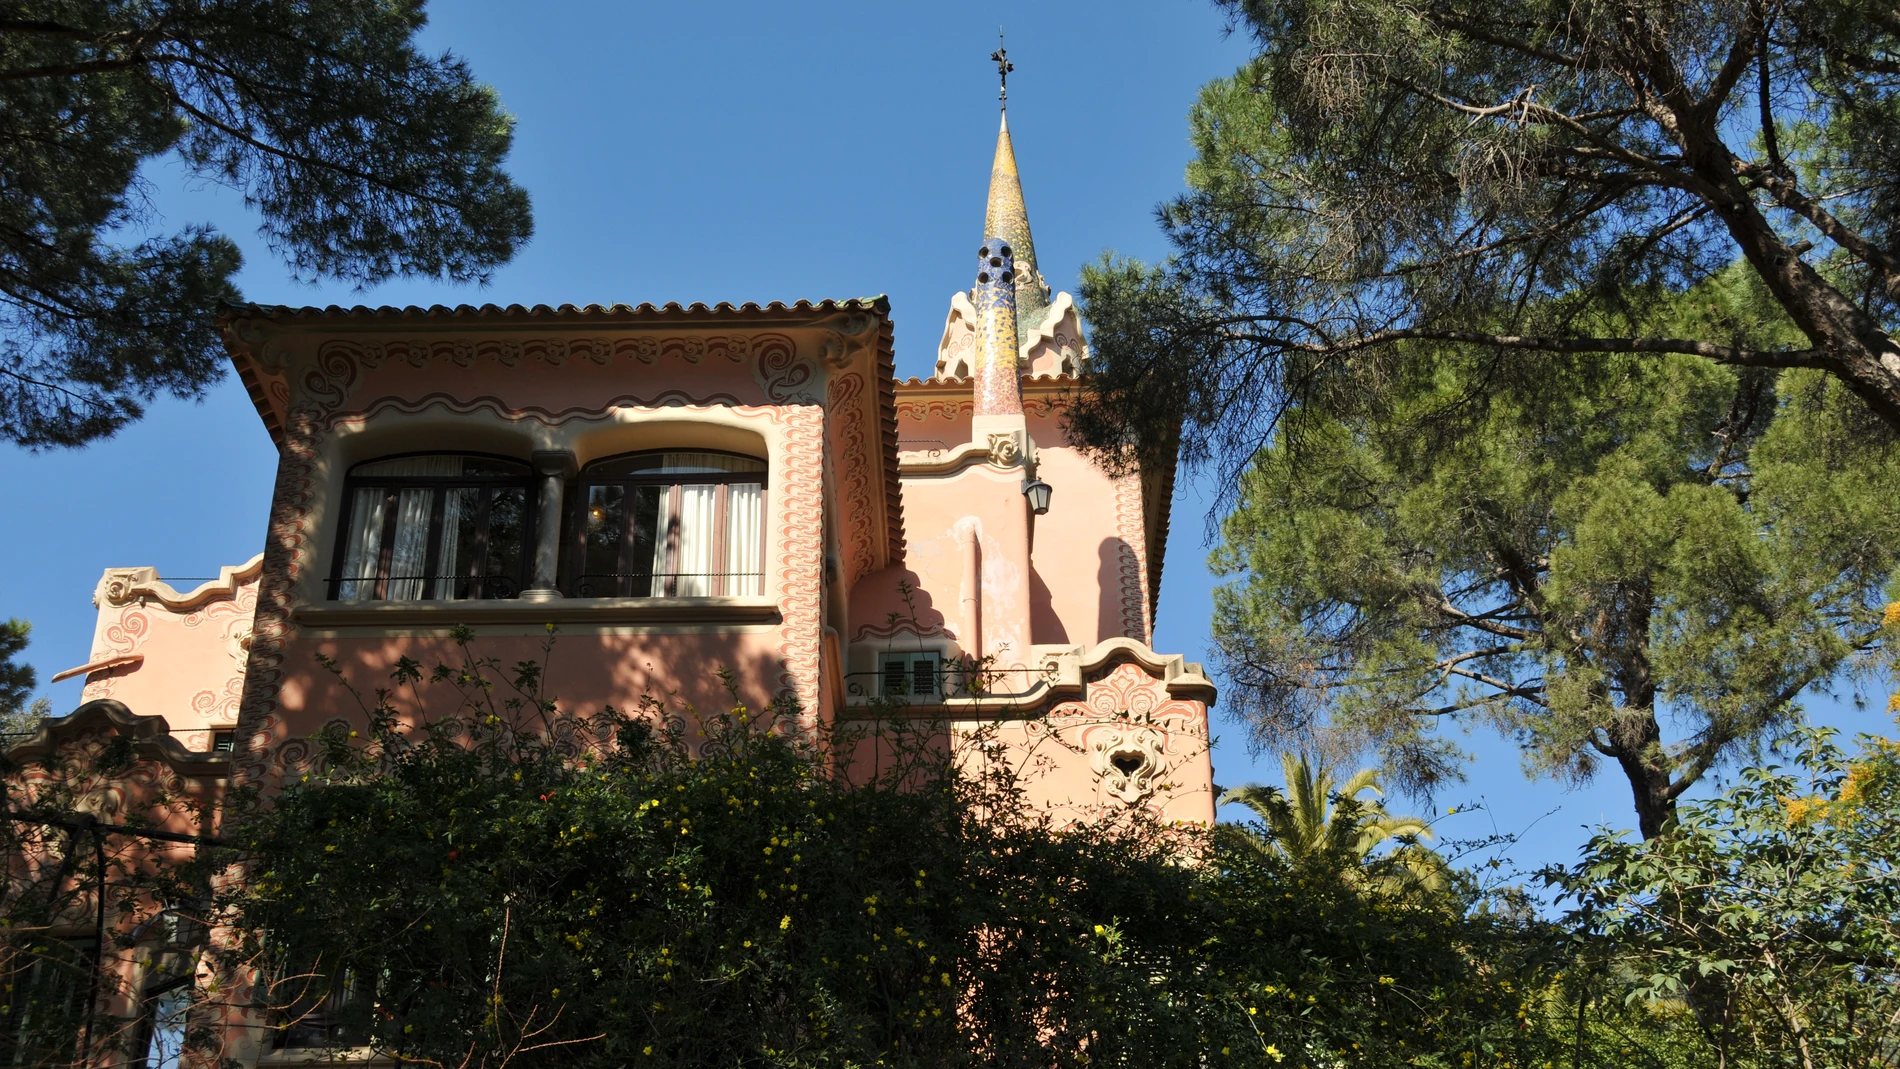 La "Casa Rosada" del Park Güell, donde Gaudí vivió más de 20 años. La adquirió en 1906